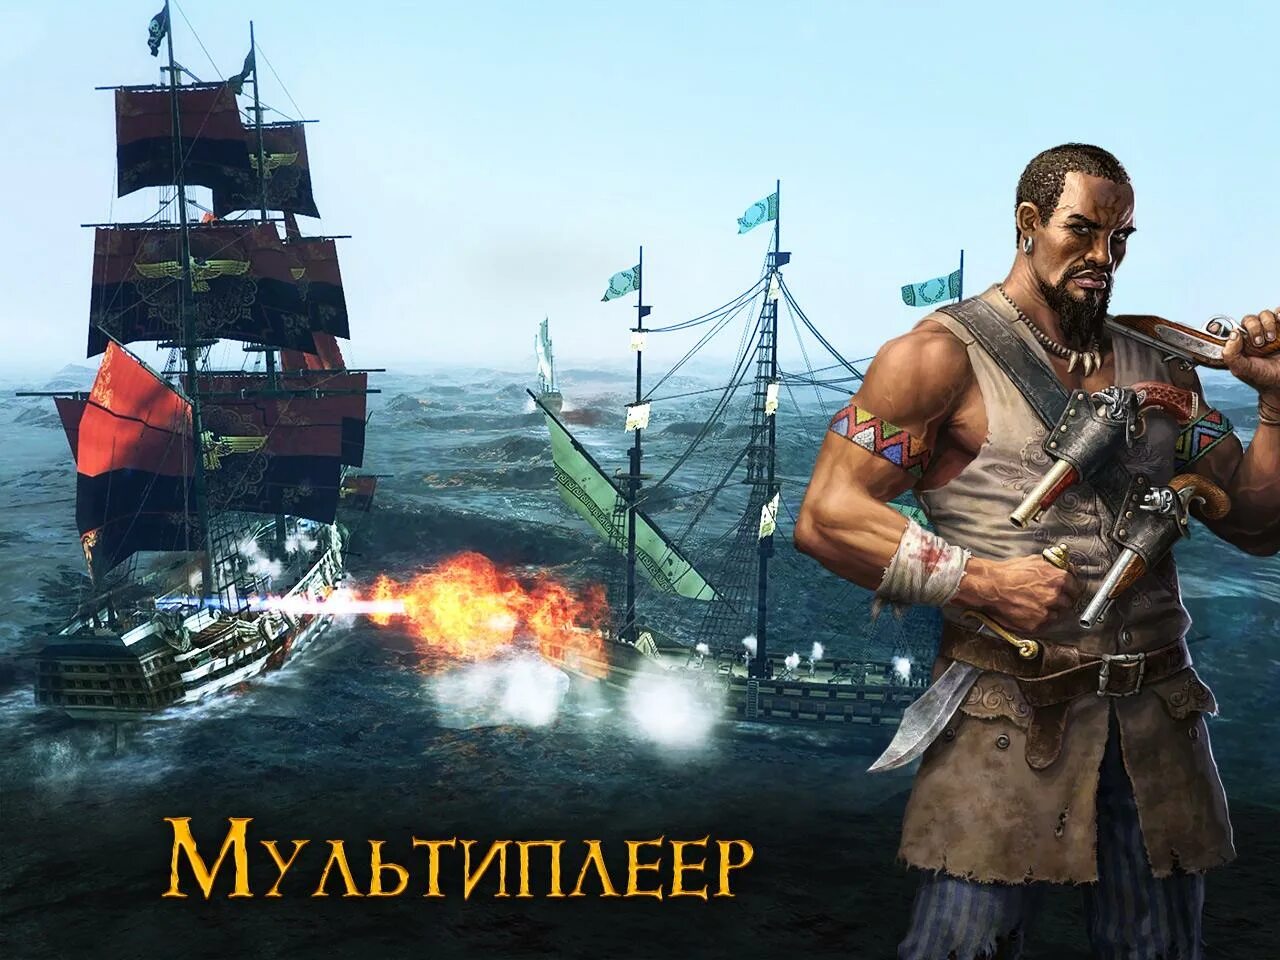 Tempest: Pirate Action. Пираты игра экшен. Темпес премиум РПГ пират. Tempest: Pirate Action RPG Premium. Игра пираты с открытым миром